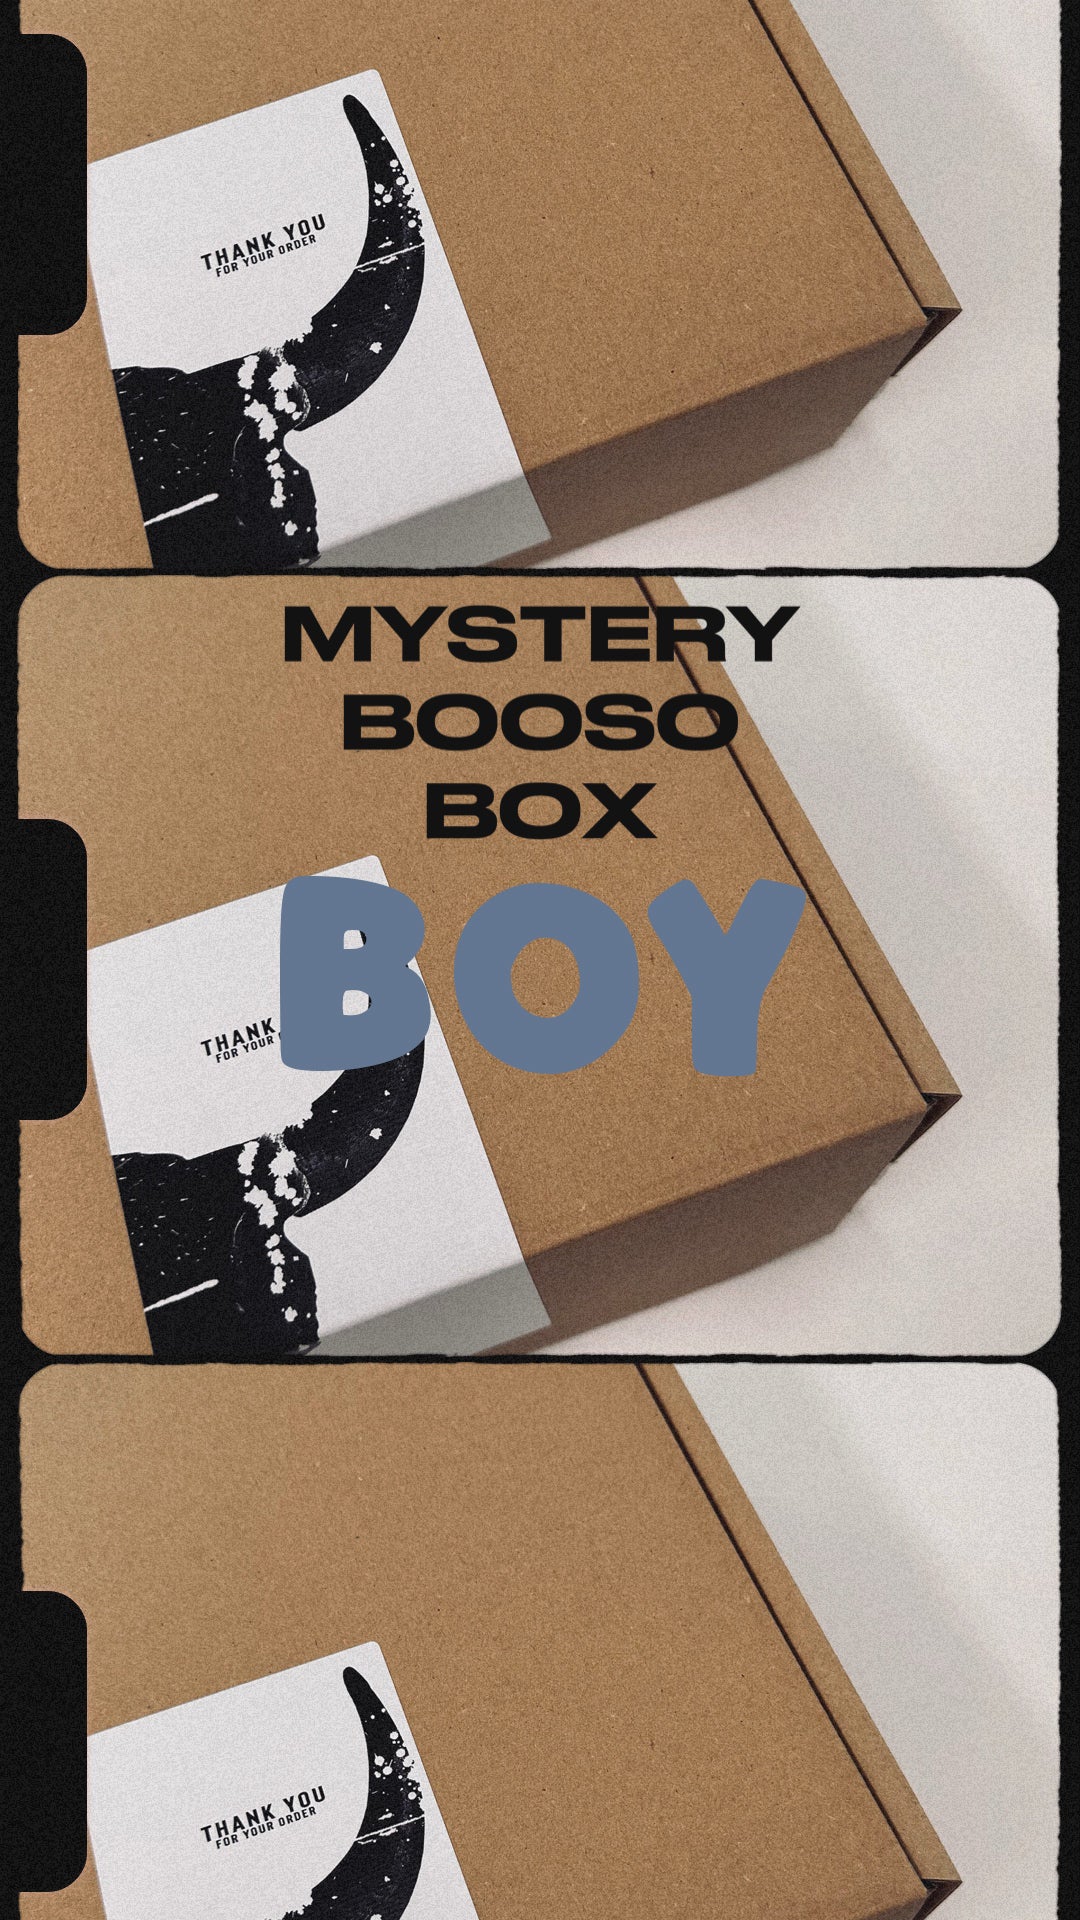 MYSTERY BOOSO BOX boy